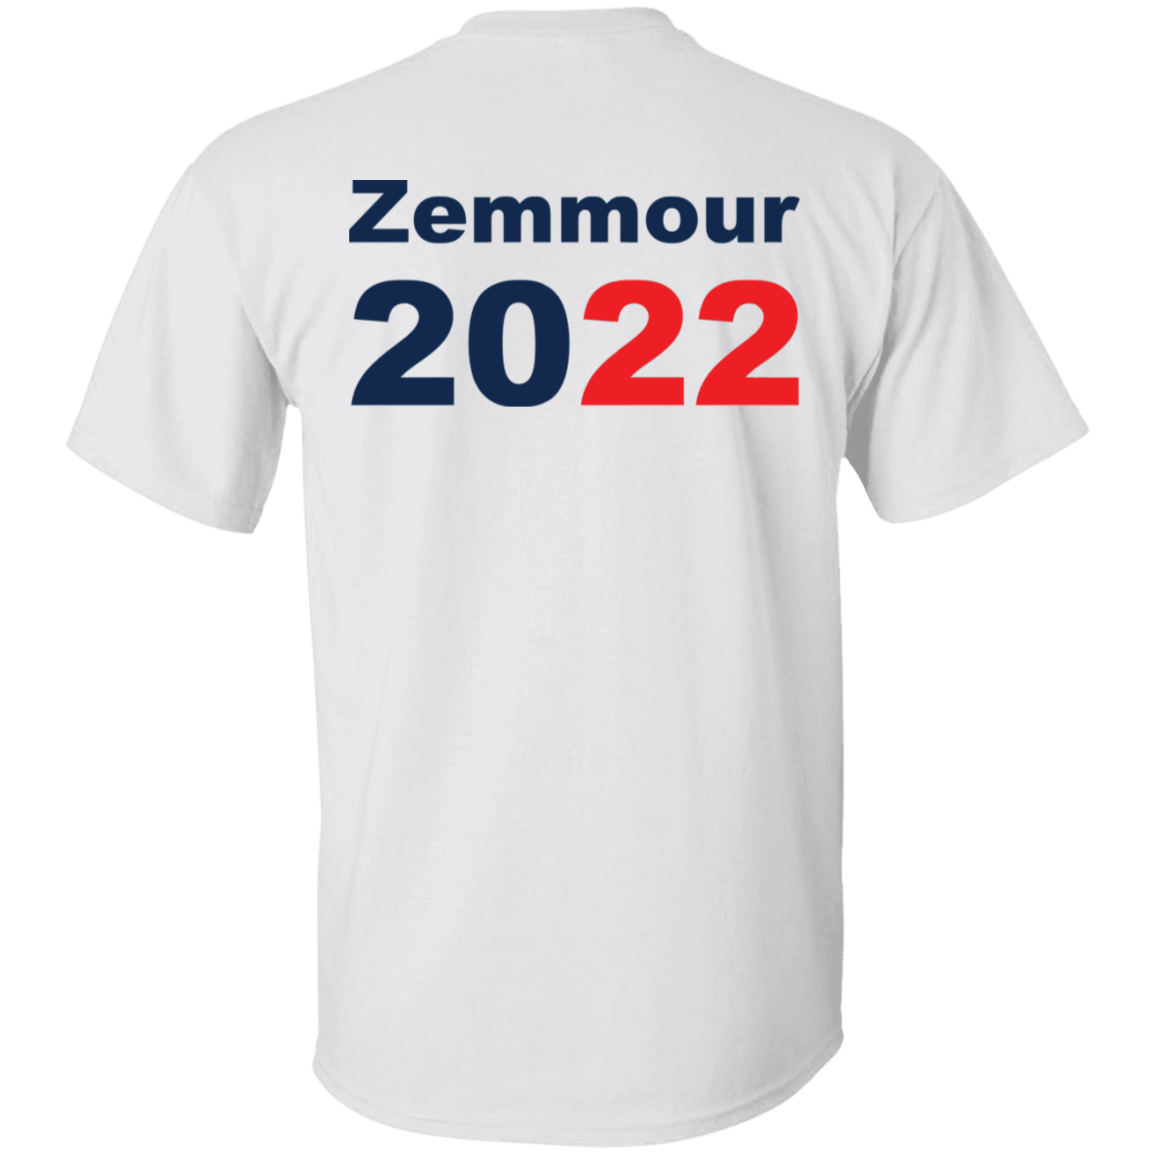 [Back] Zemmour 2022 Shirt